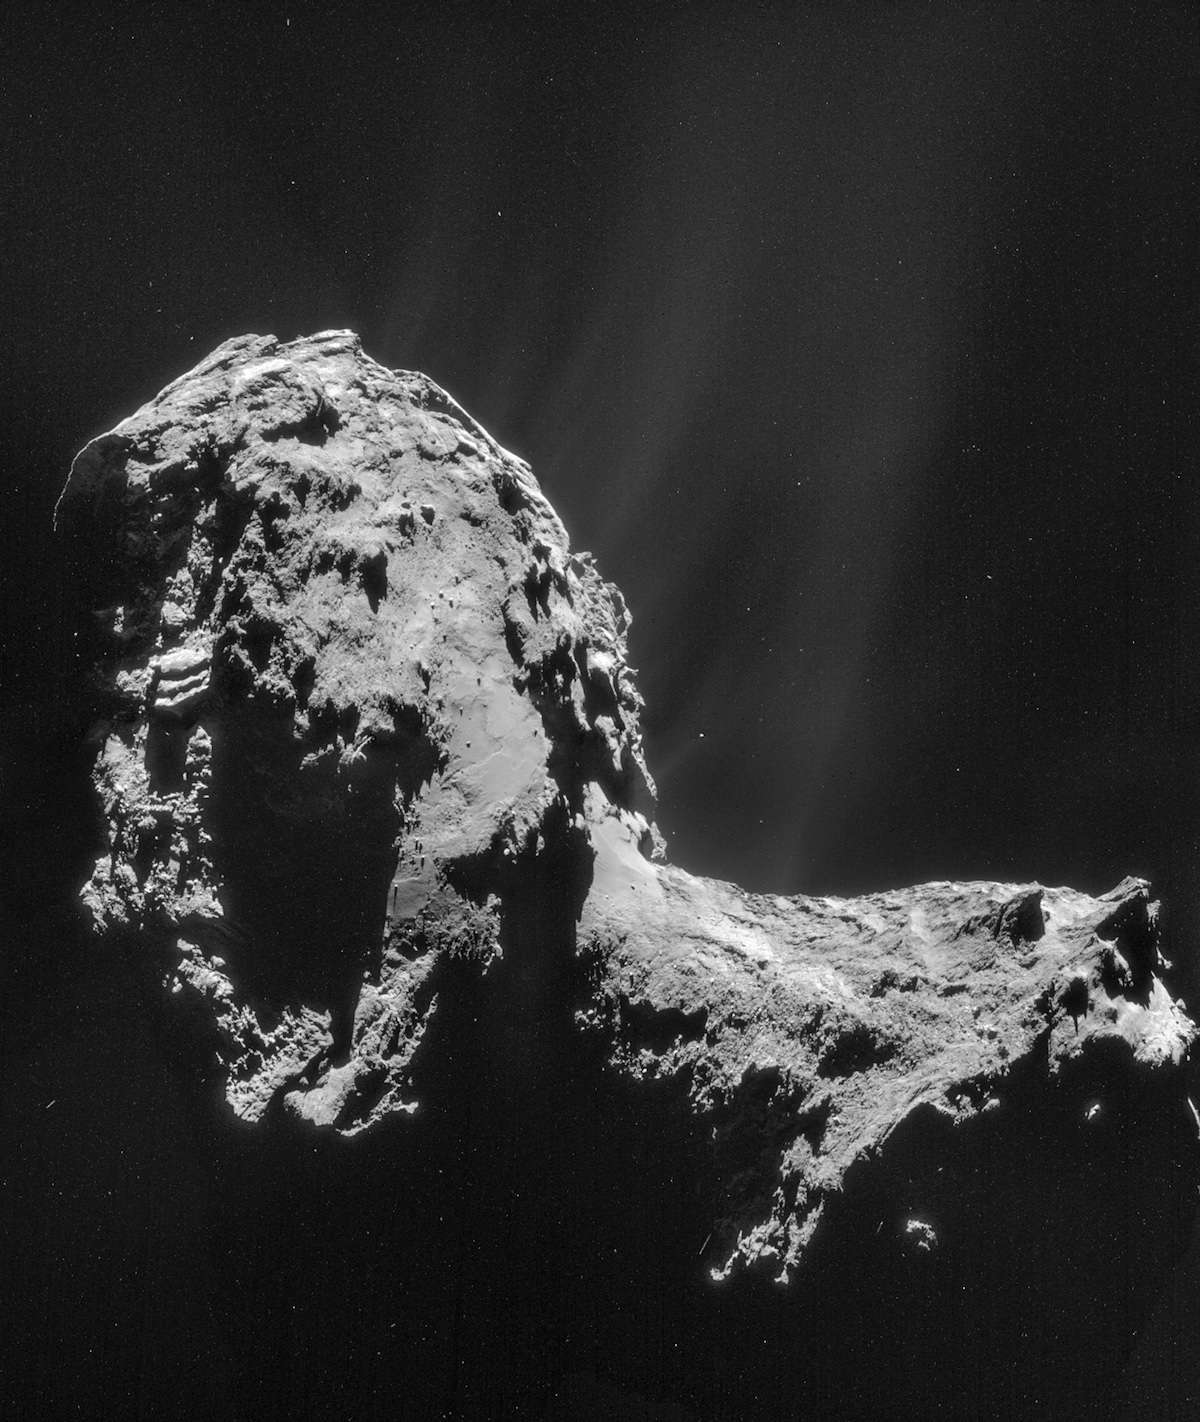 Le buzz du mois : l'eau de la comète de Rosetta n'est pas celle de la Terre. Mosaïque de 4 images du noyau de 67P/Churyumov-Gerasimenko — surnommée Tchouri — prises par la caméra de navigation (Navcam) de Rosetta, le 20 novembre 2014. On distingue les jets de gaz et de poussières qui sont à l’origine de son atmosphère, la coma. Les mesures de spectrométrie de masse effectuées par l’instrument Rosina suggèrent que l’eau qui y abonde n’est pas la même que celle de nos océans. © Esa, Rosetta, Navcam, CC BY-SA IGO 3.0